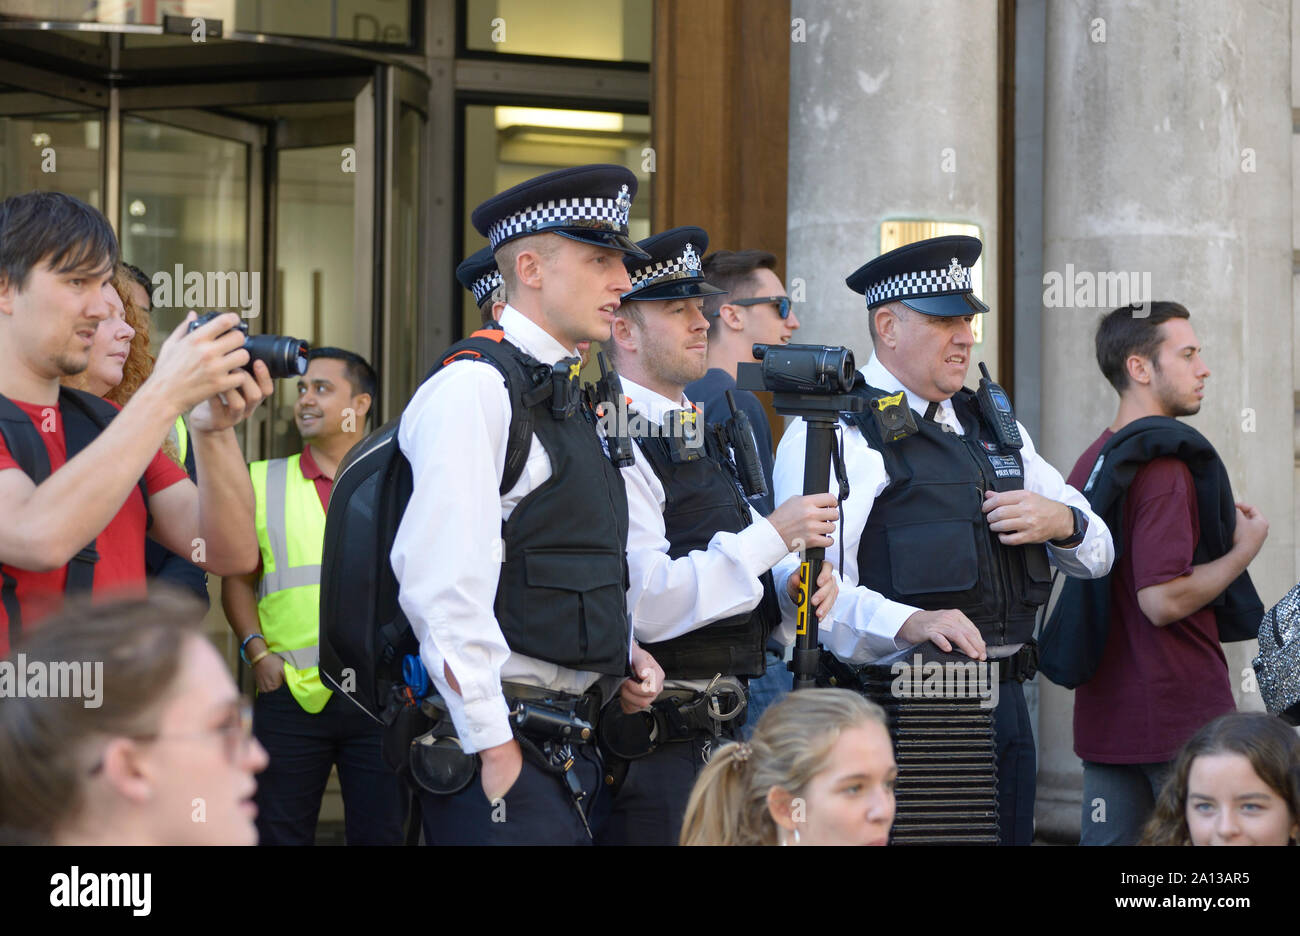 Londra, Inghilterra, Regno Unito. Metropolitan gli ufficiali di polizia a guardare e catturare le persone che hanno preso parte ad una manifestazione di protesta, Whitehall, settembre 2019. Foto Stock